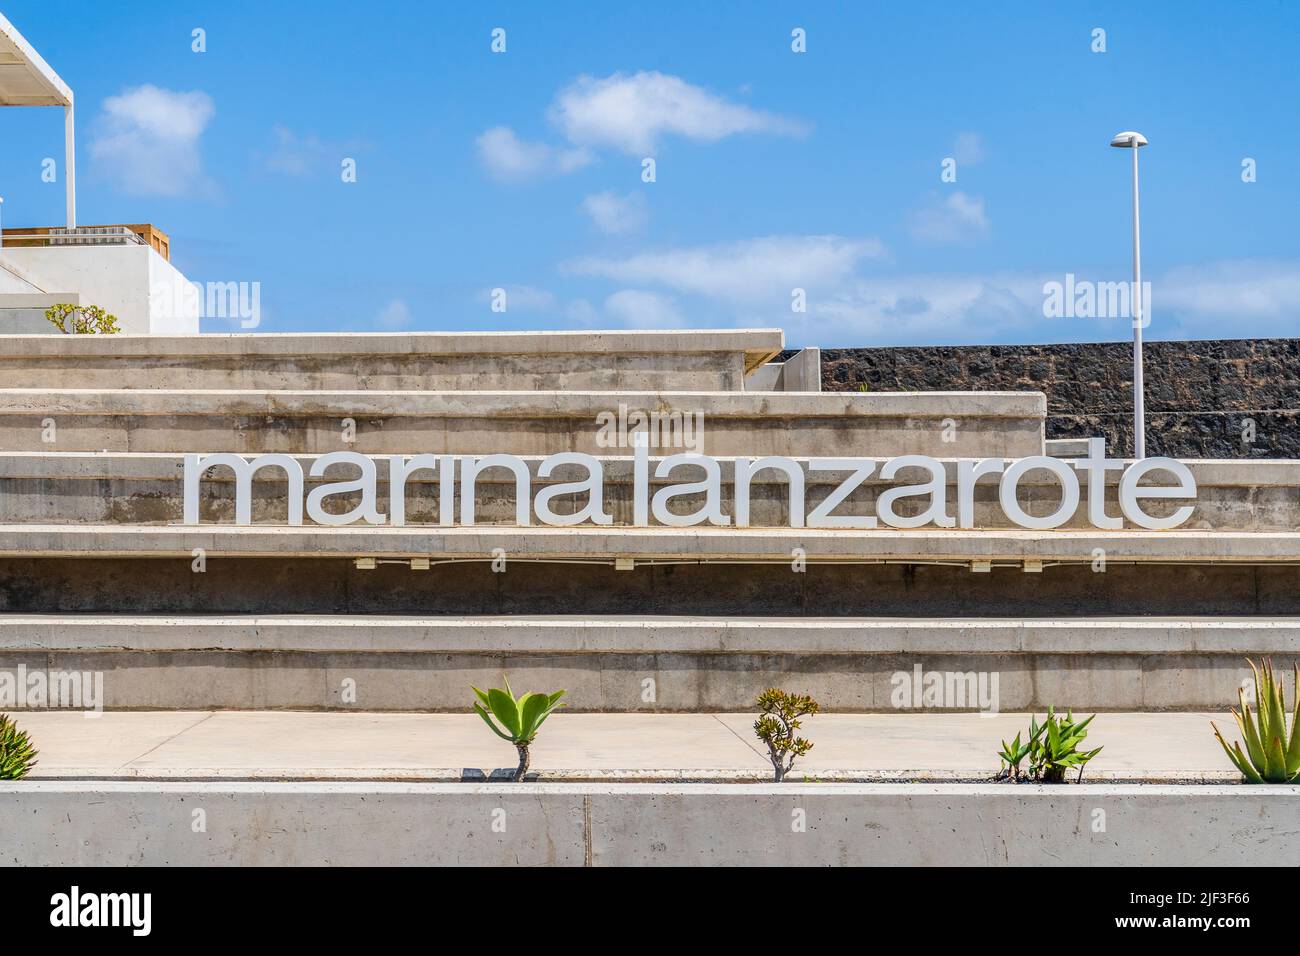 Arquitectura moderna y letrero que dice Marina Lanzarote en Arrecife, capital de Lanzarote, Islas Canarias, España Foto de stock